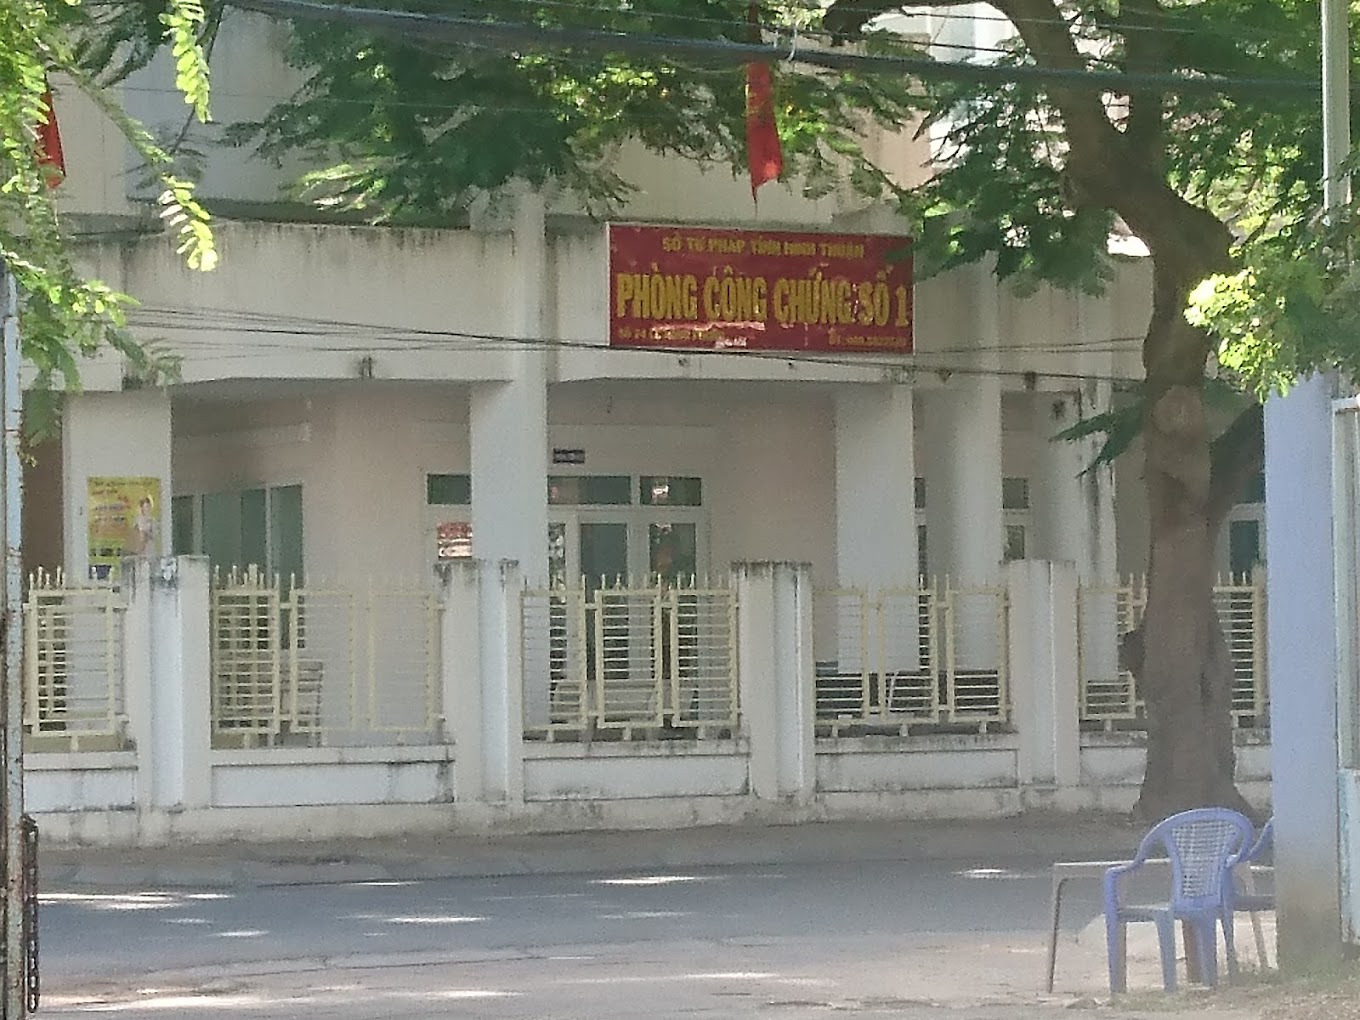 Liên hệ Phòng công chứng số 1 Ninh Thuận thông tin địa chỉ số điện thoại